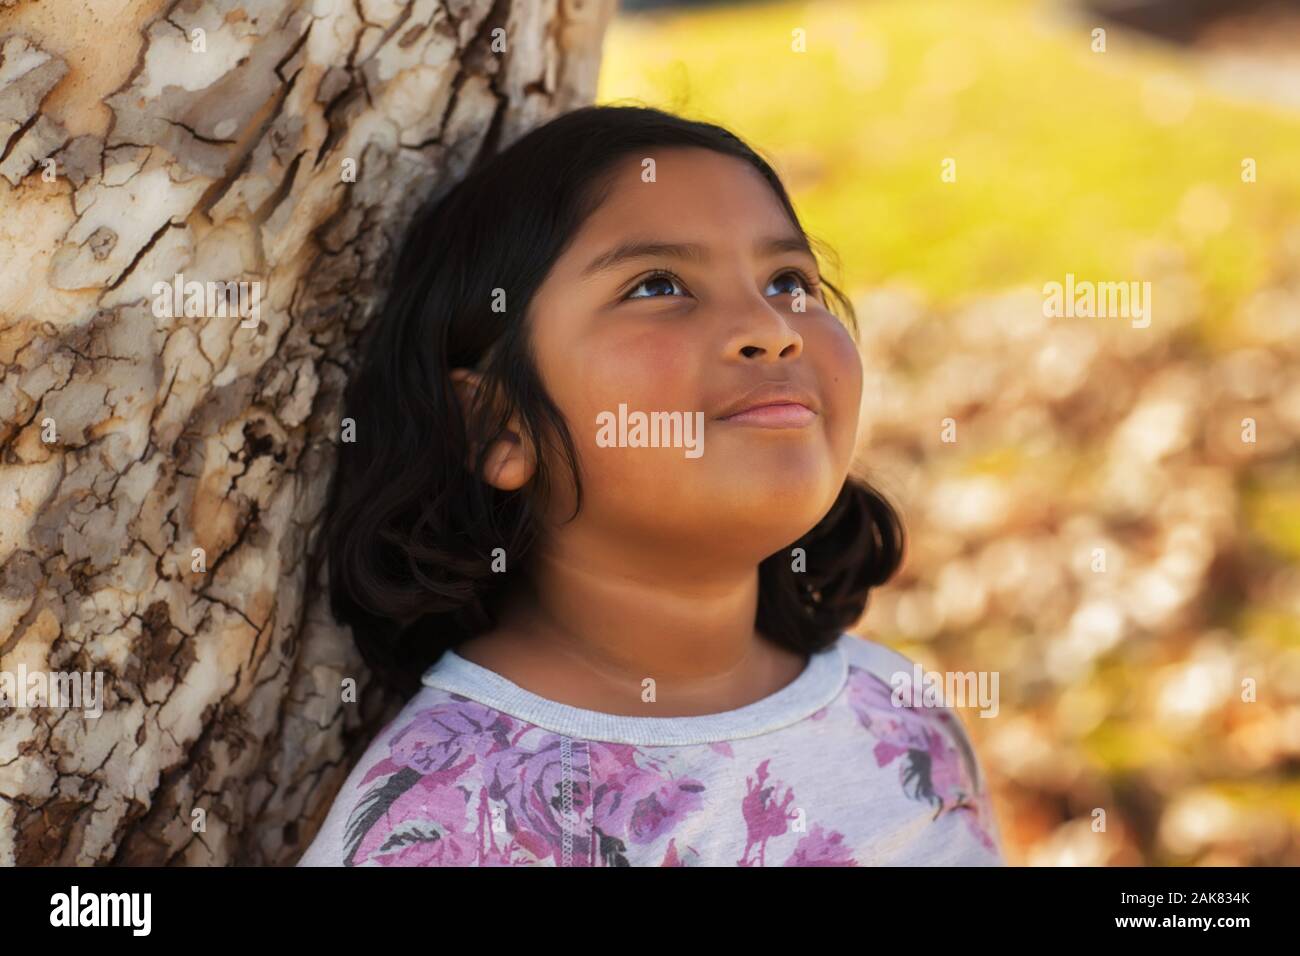 Un latino girl avec un doux sourire, se penchant sur un arbre et regarde le ciel avec un sentiment d'espoir. Banque D'Images